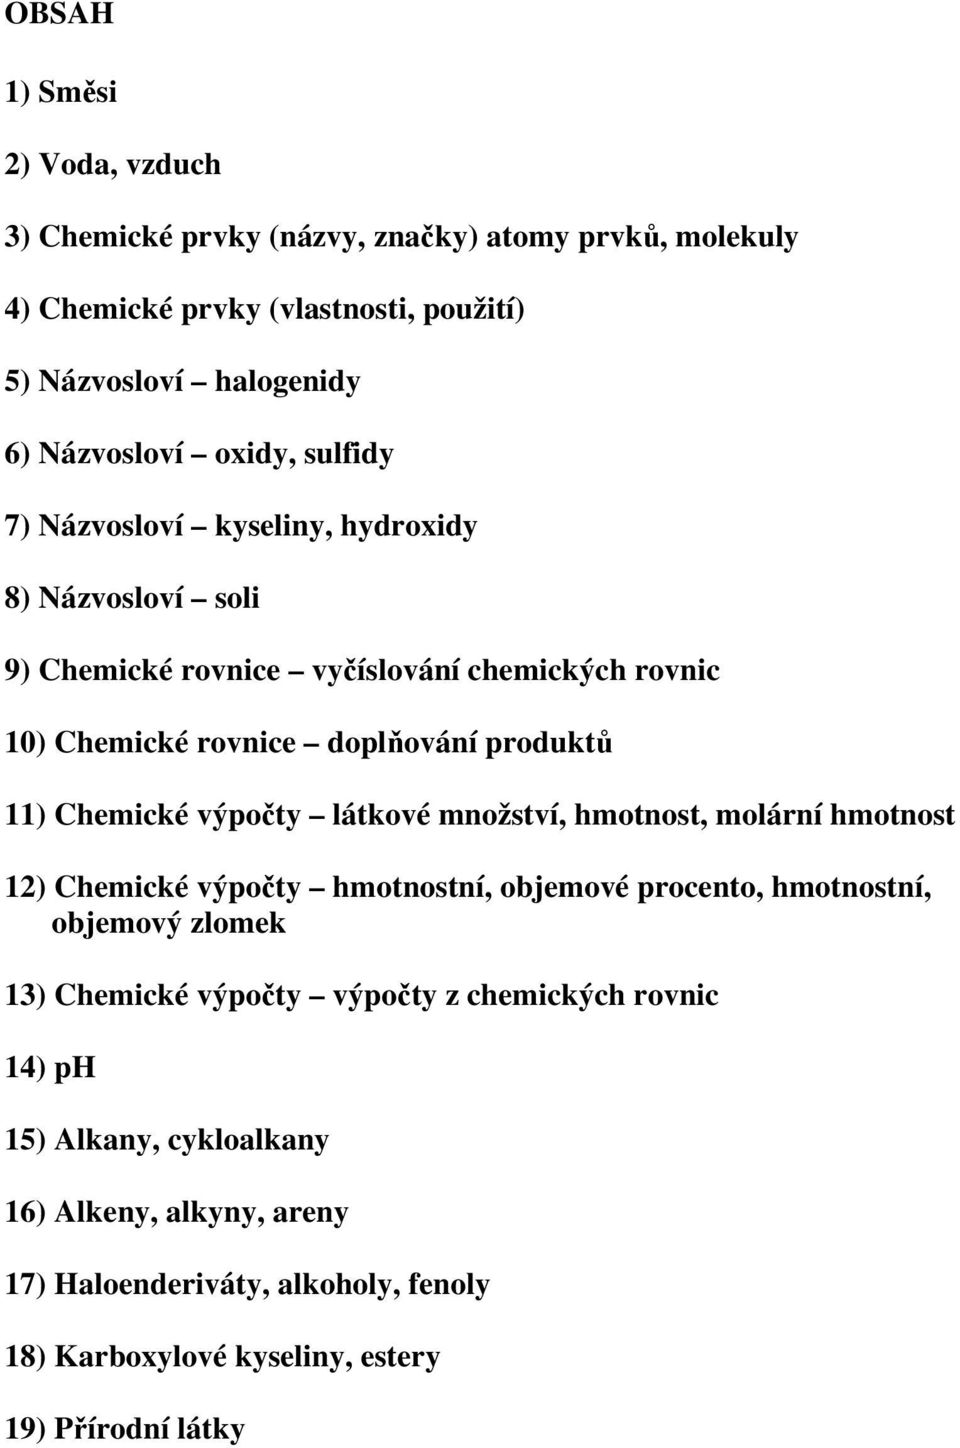 Chemické výpočty látkové množství, hmotnost, molární hmotnost 12) Chemické výpočty hmotnostní, objemové procento, hmotnostní, objemový zlomek 13) Chemické výpočty